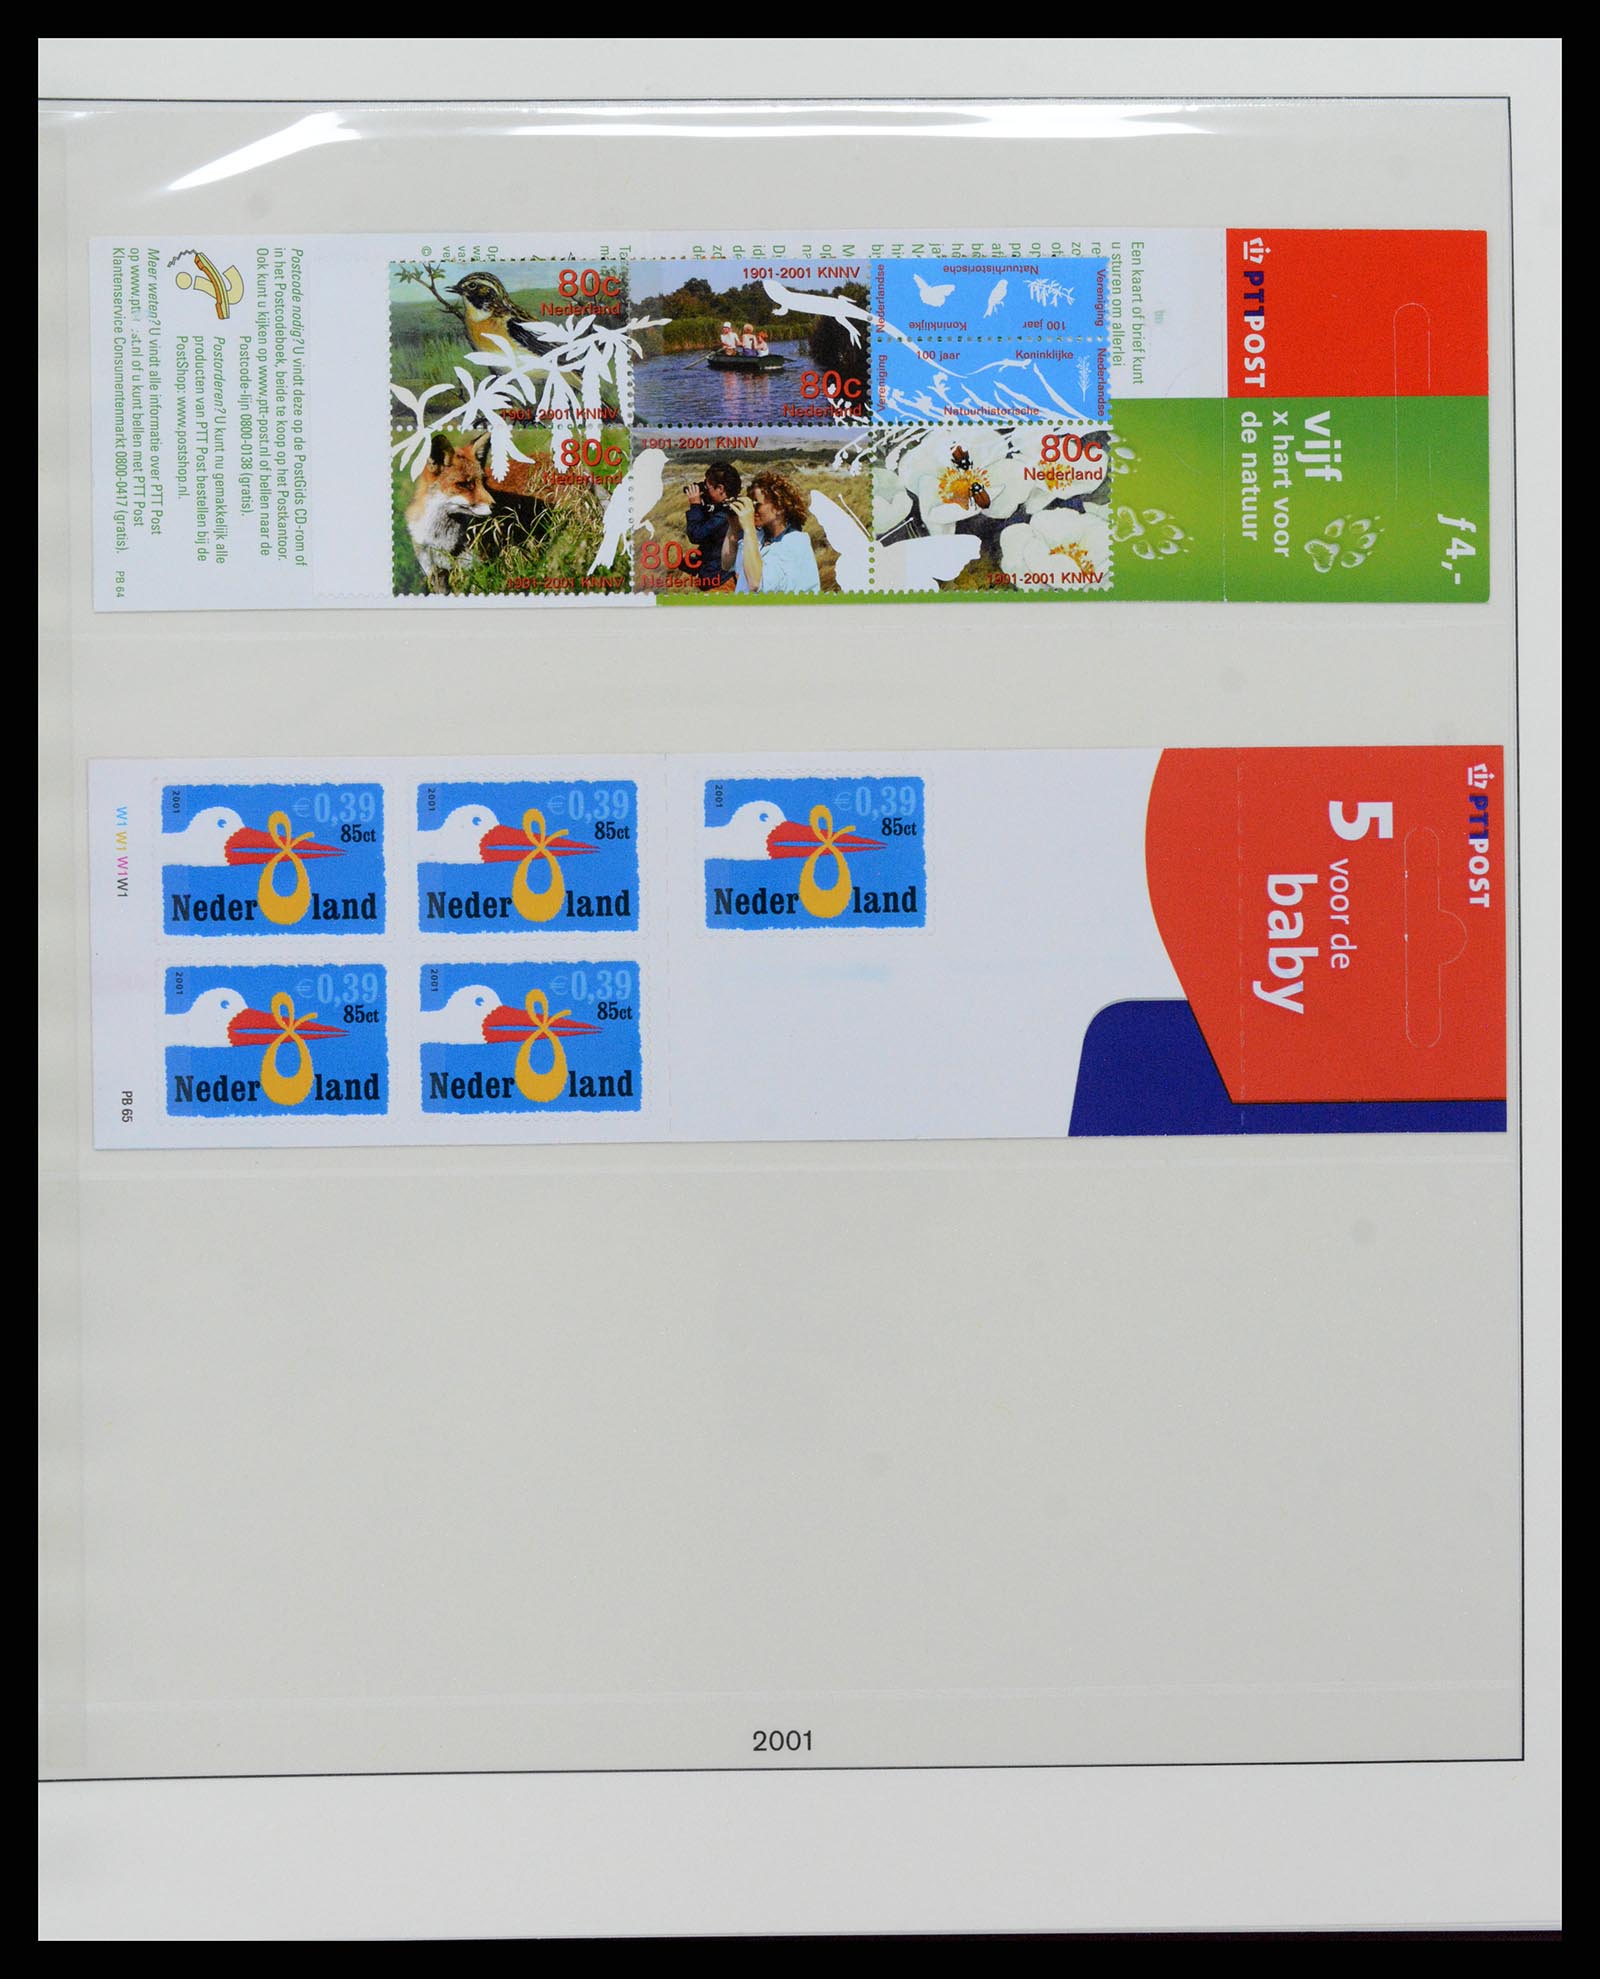 37994 035 - Stamp Collection 37994 Netherlands stampbooklets 1964-2002.